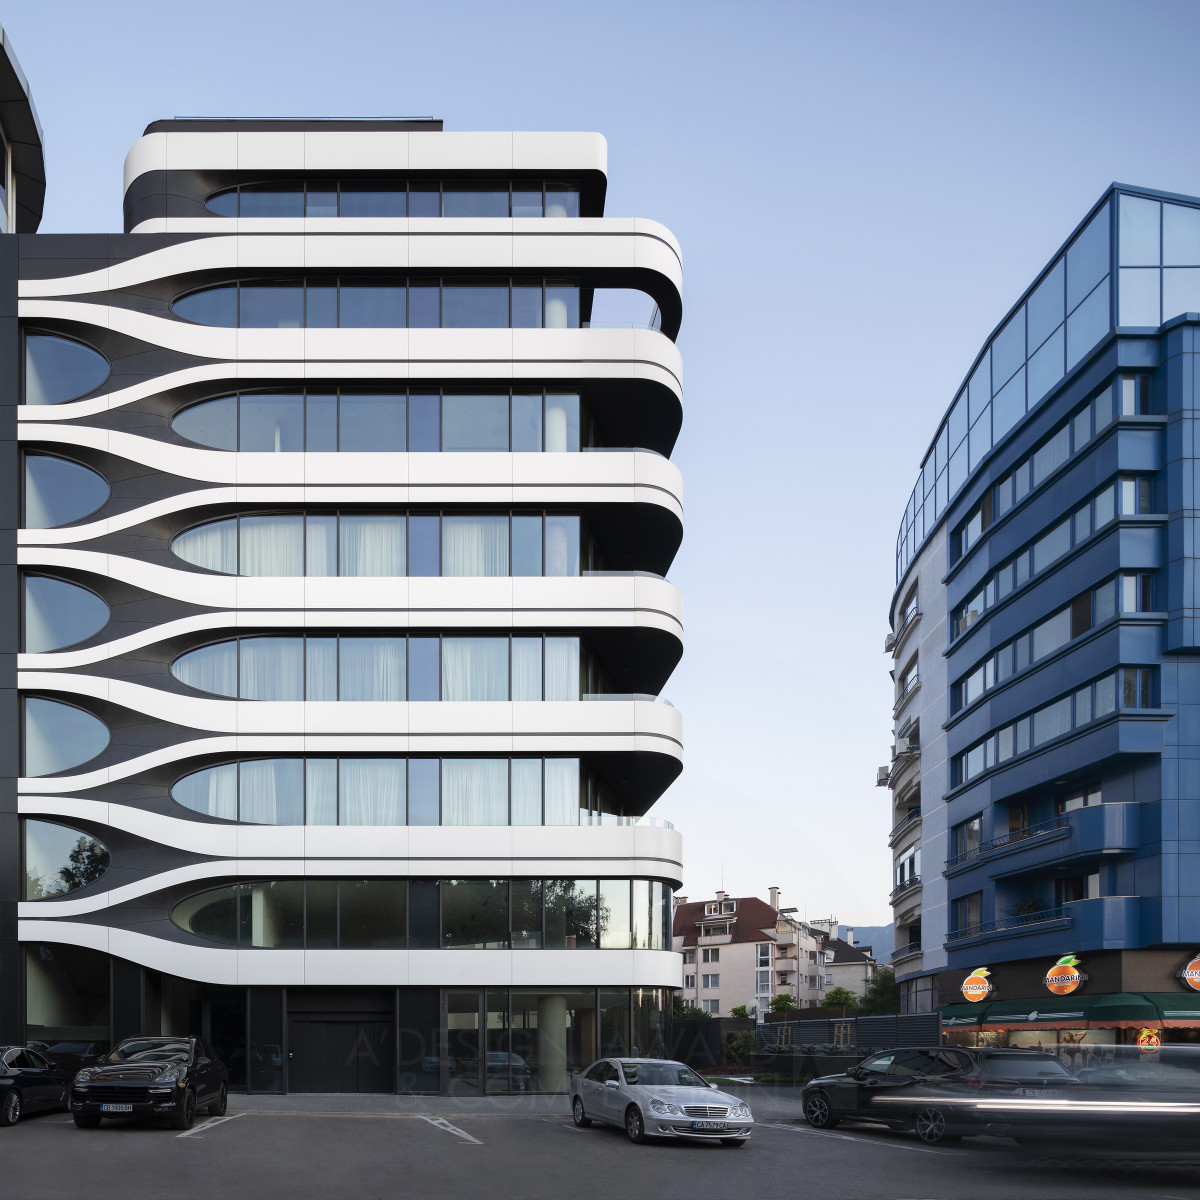 革新的なデザインと技術が融合した住宅ビル「B73アパートメント」